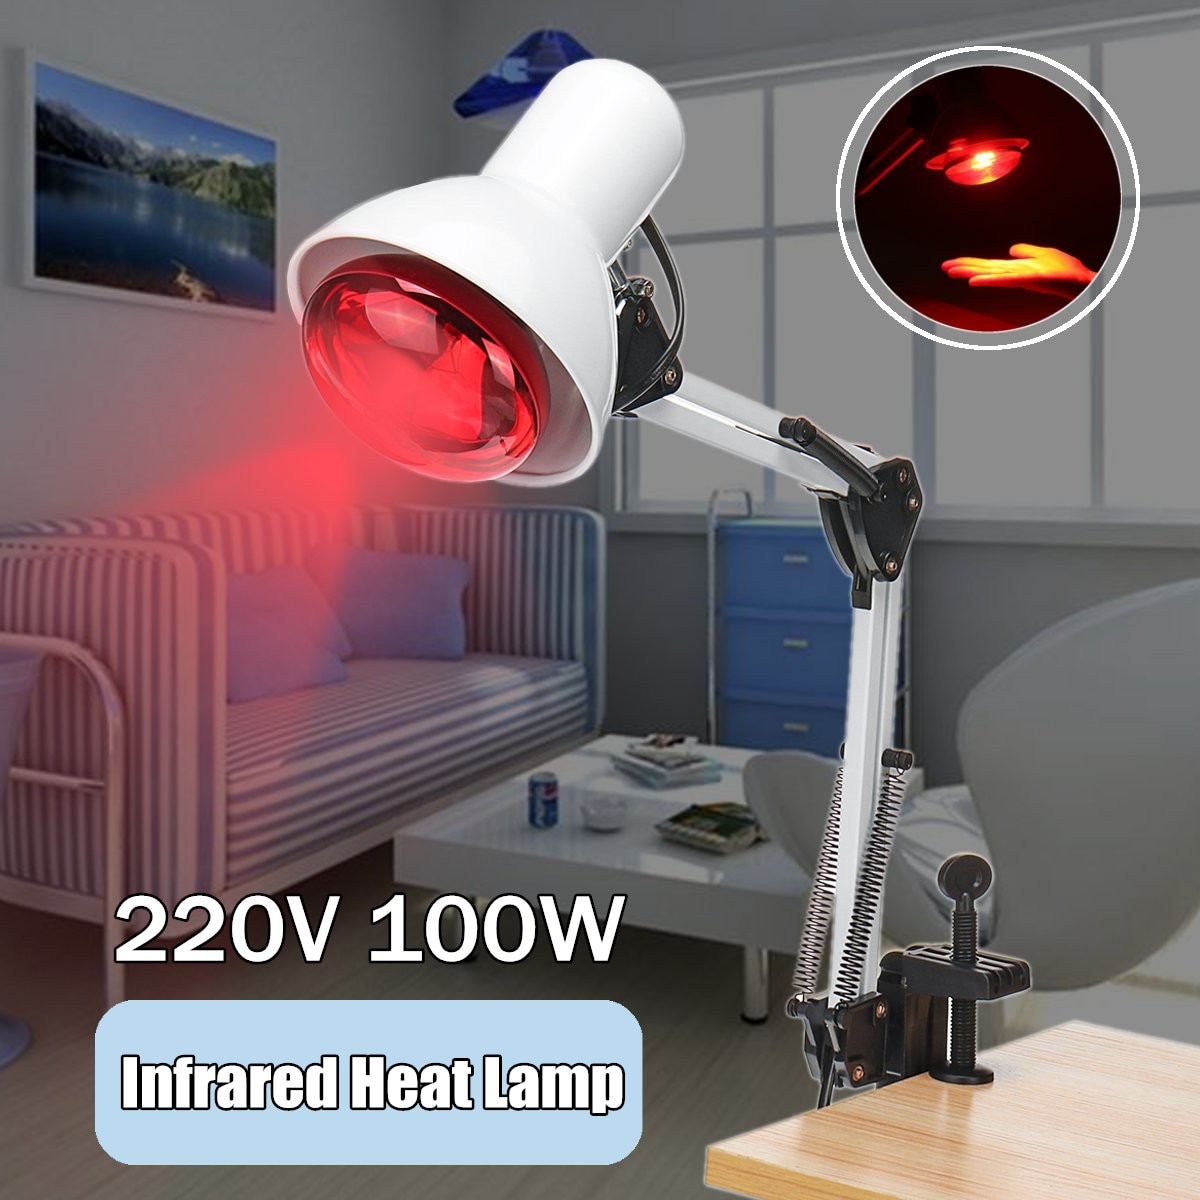 220V 100W Infrarood Verwarming Lamp Therapeutische Verwarming Therapie Tafellamp Voor Spier Ontspanning Pijnbestrijding Gloeilamp Massage gereedschap